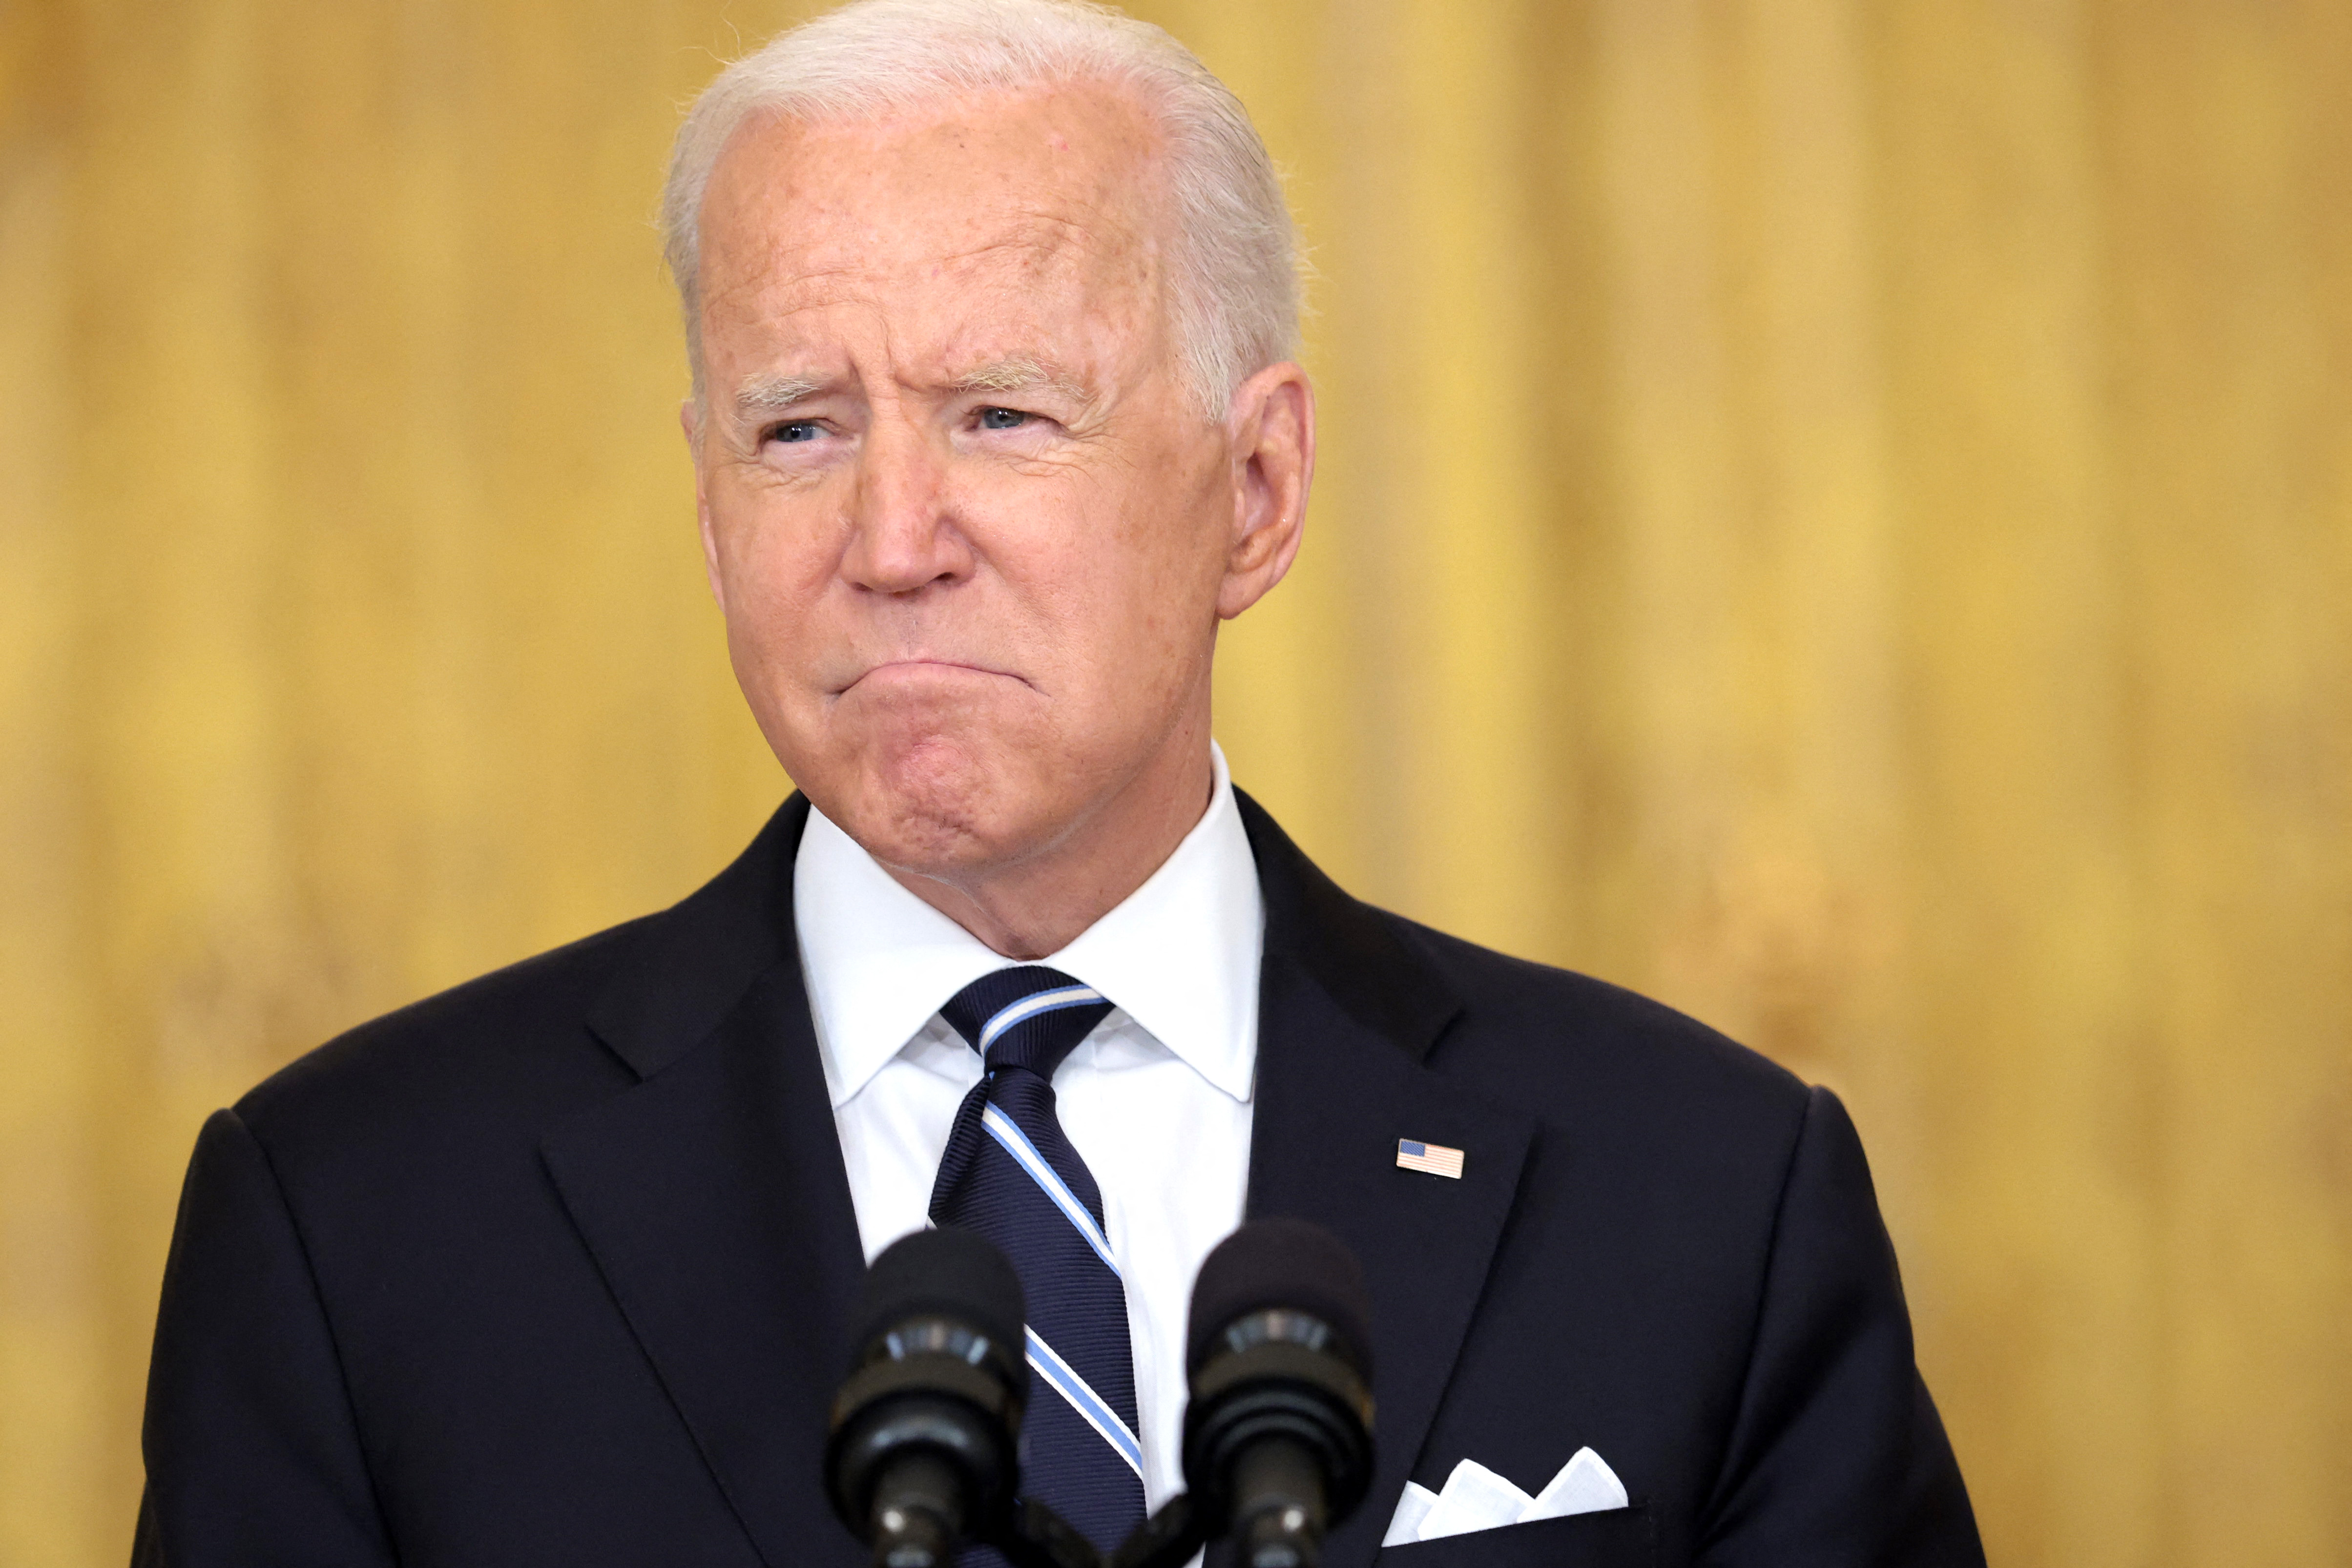 Sikeres volt a béltükrözés, Joe Biden visszavette az elnöki széket